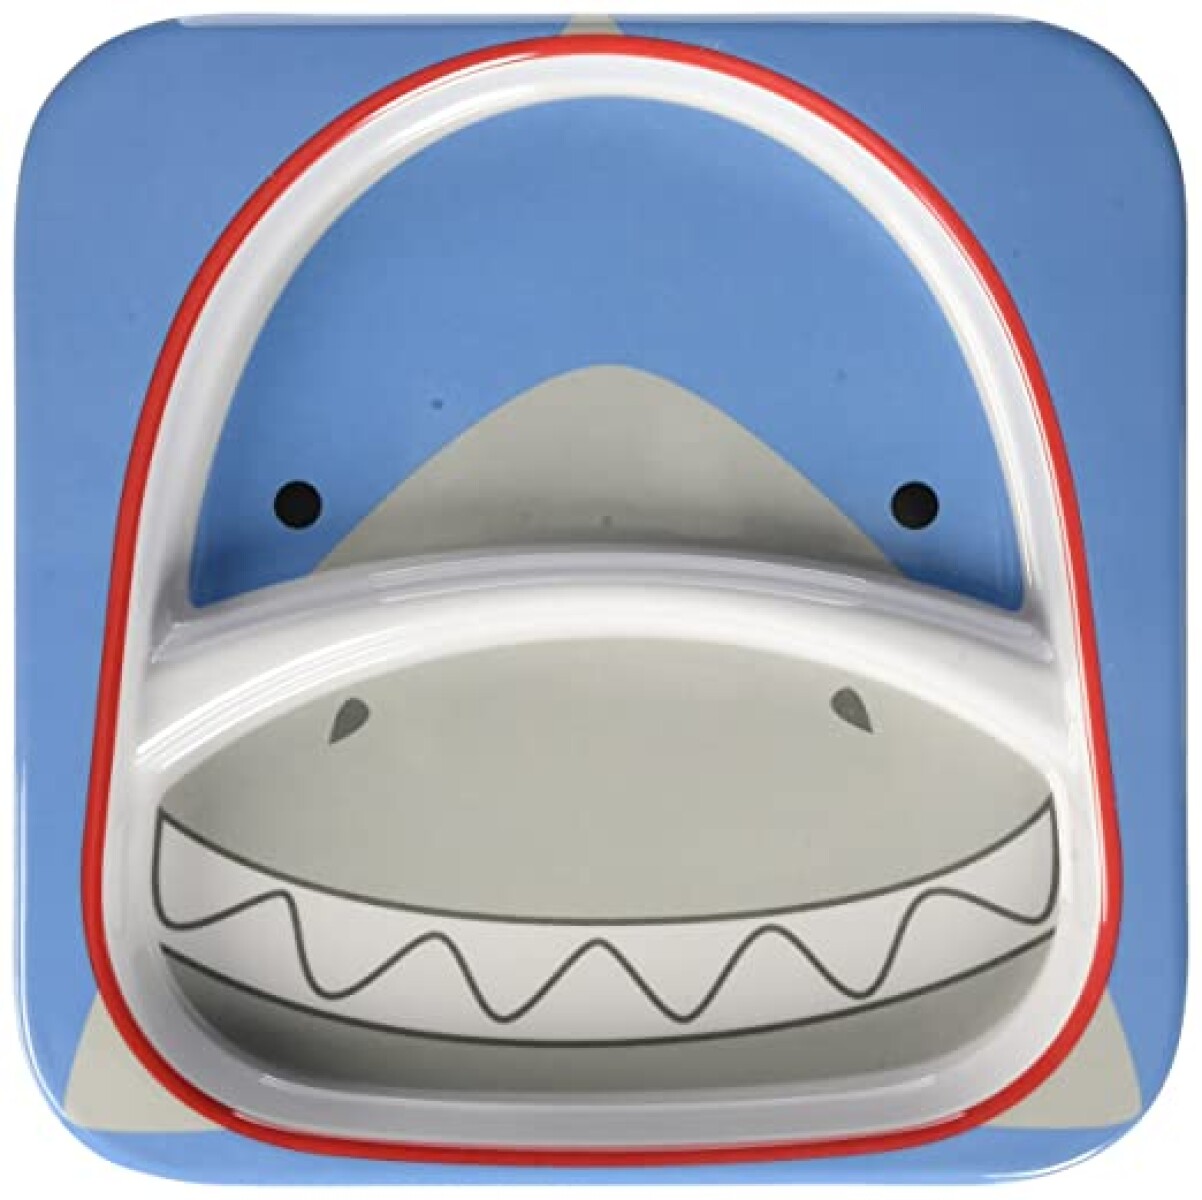 Plato con división diseño tiburón 